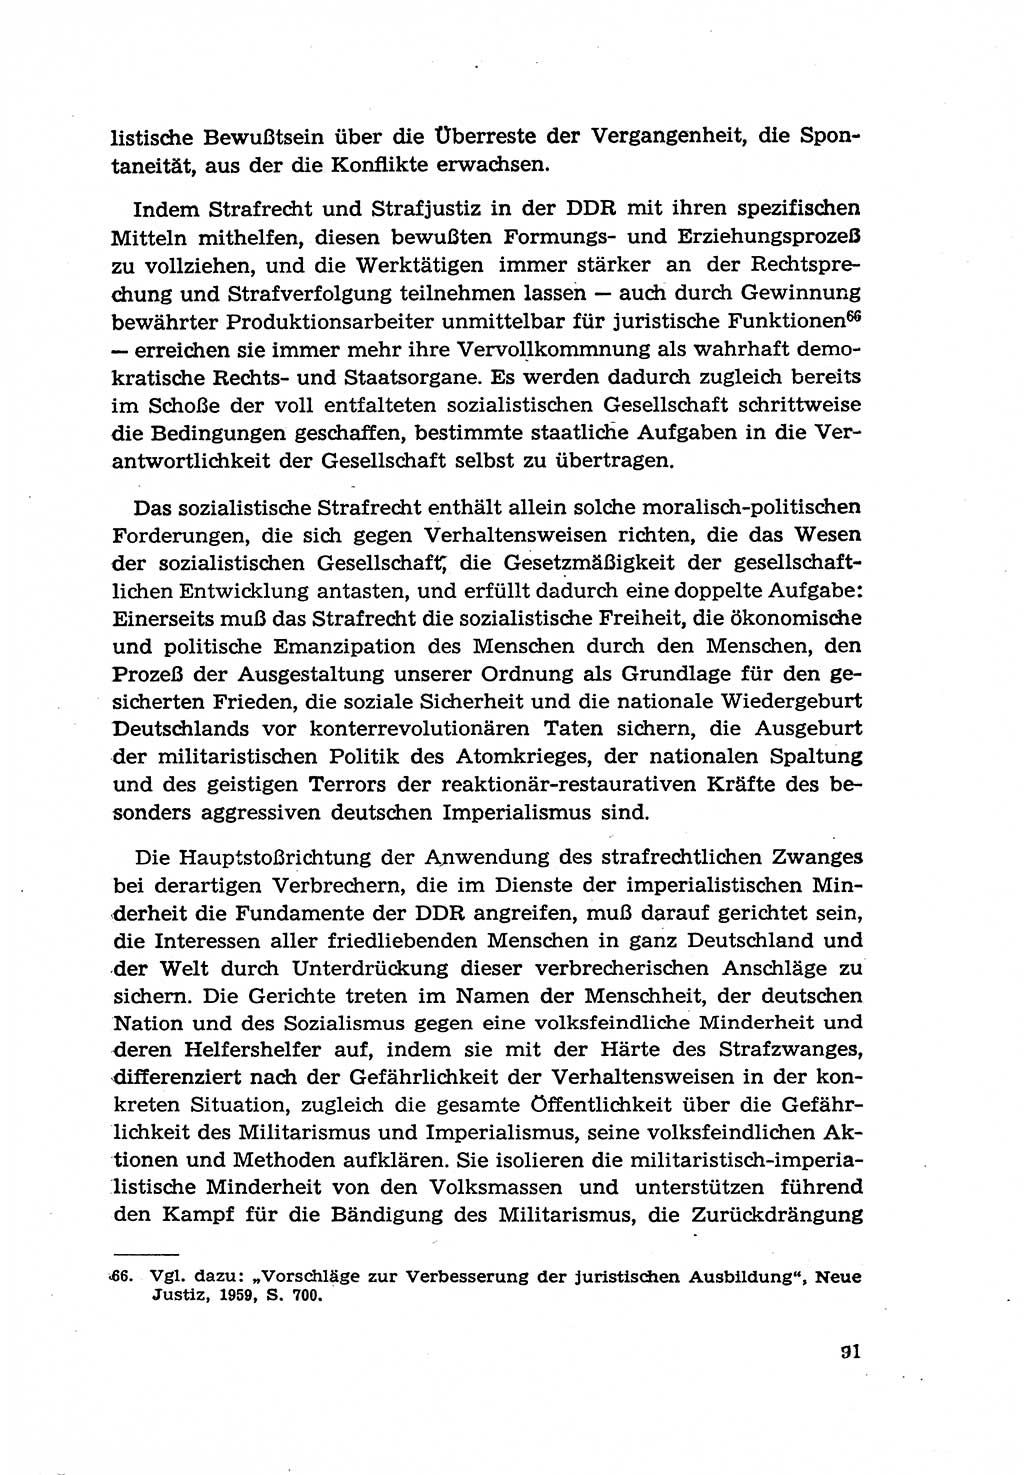 Zur Entwicklung des sozialistischen Strafrechts der Deutschen Demokratischen Republik (DDR) 1960, Seite 91 (Entw. soz. Strafr. DDR 1960, S. 91)